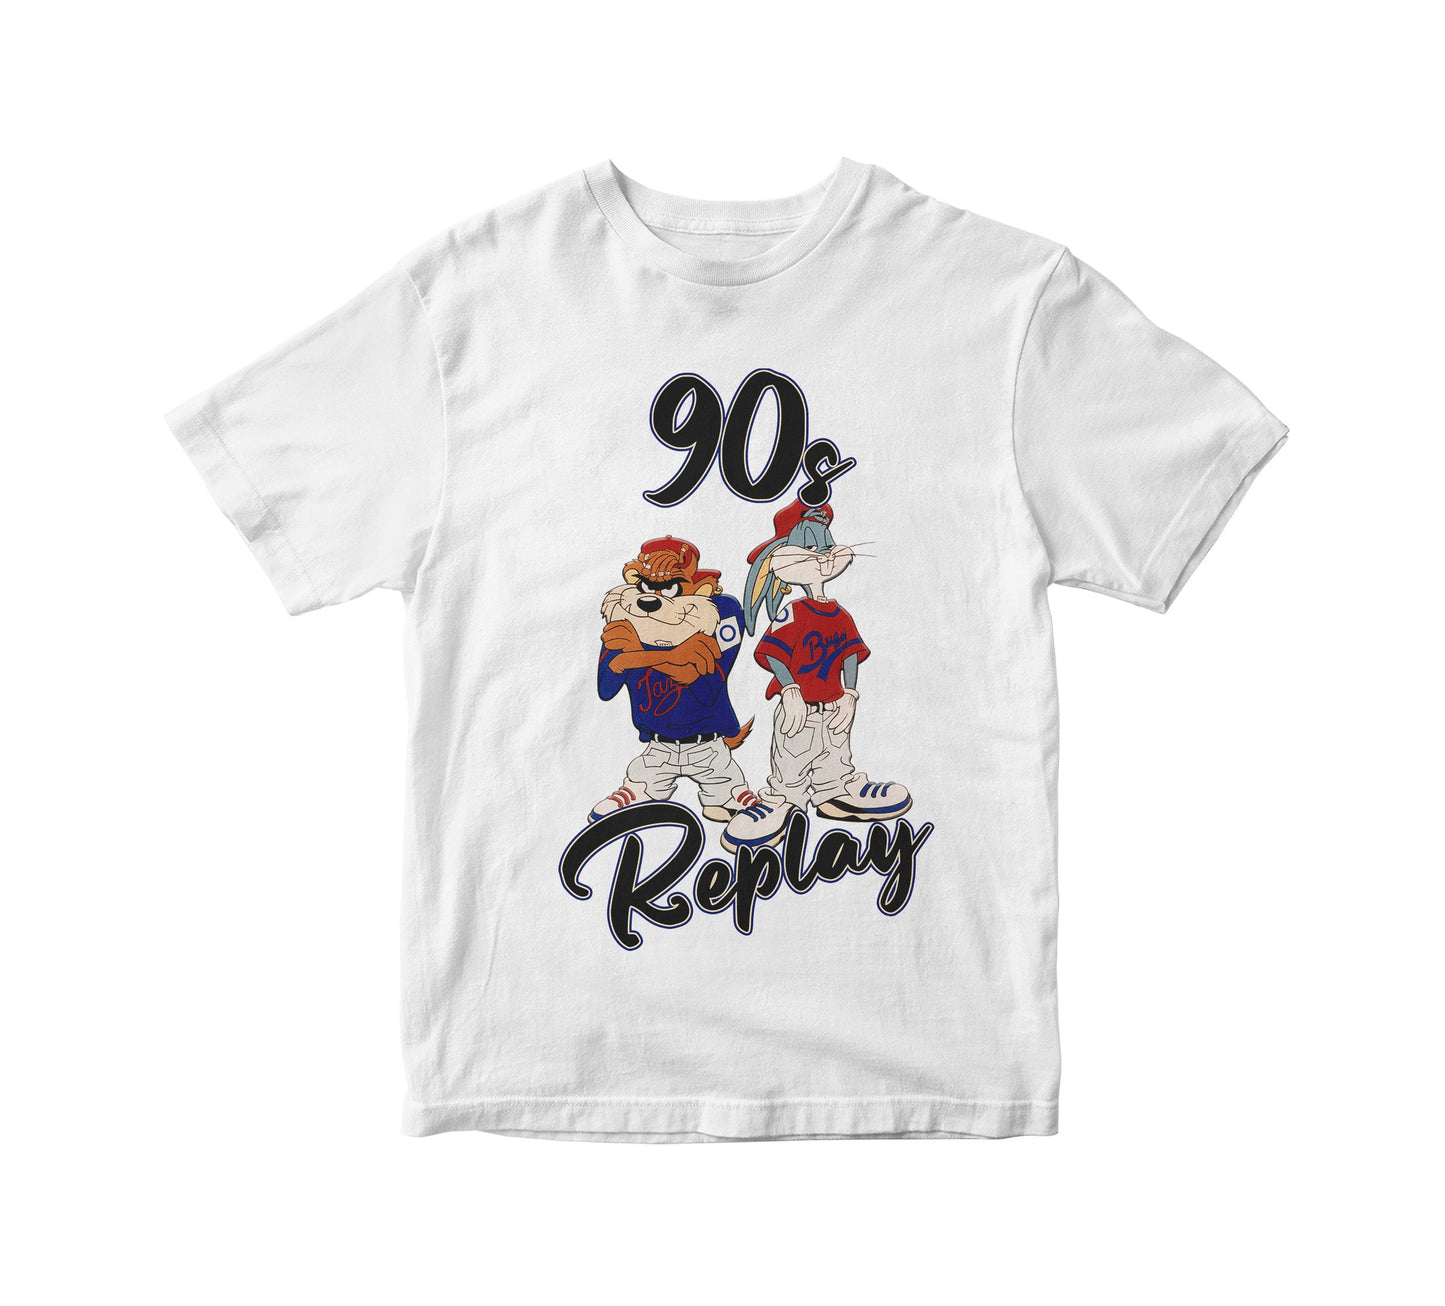 90s Replay Retro Kids Unisex T-Shirt